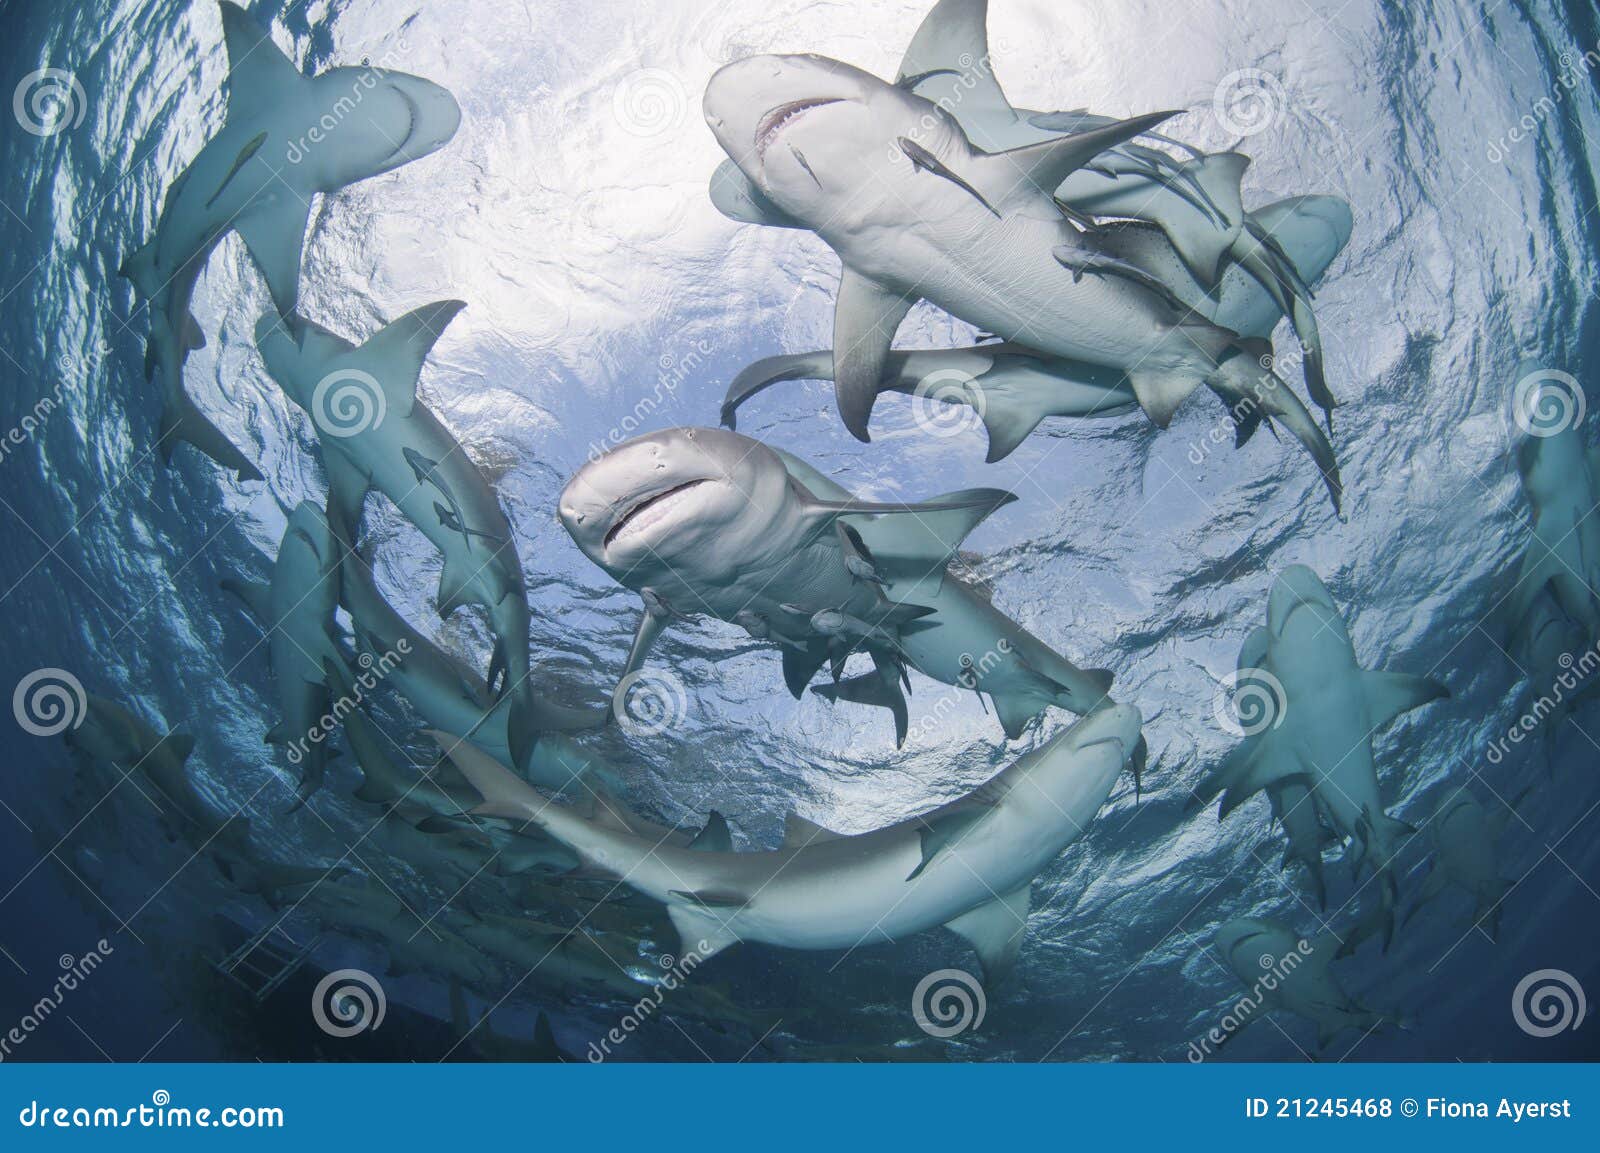 circling sharks